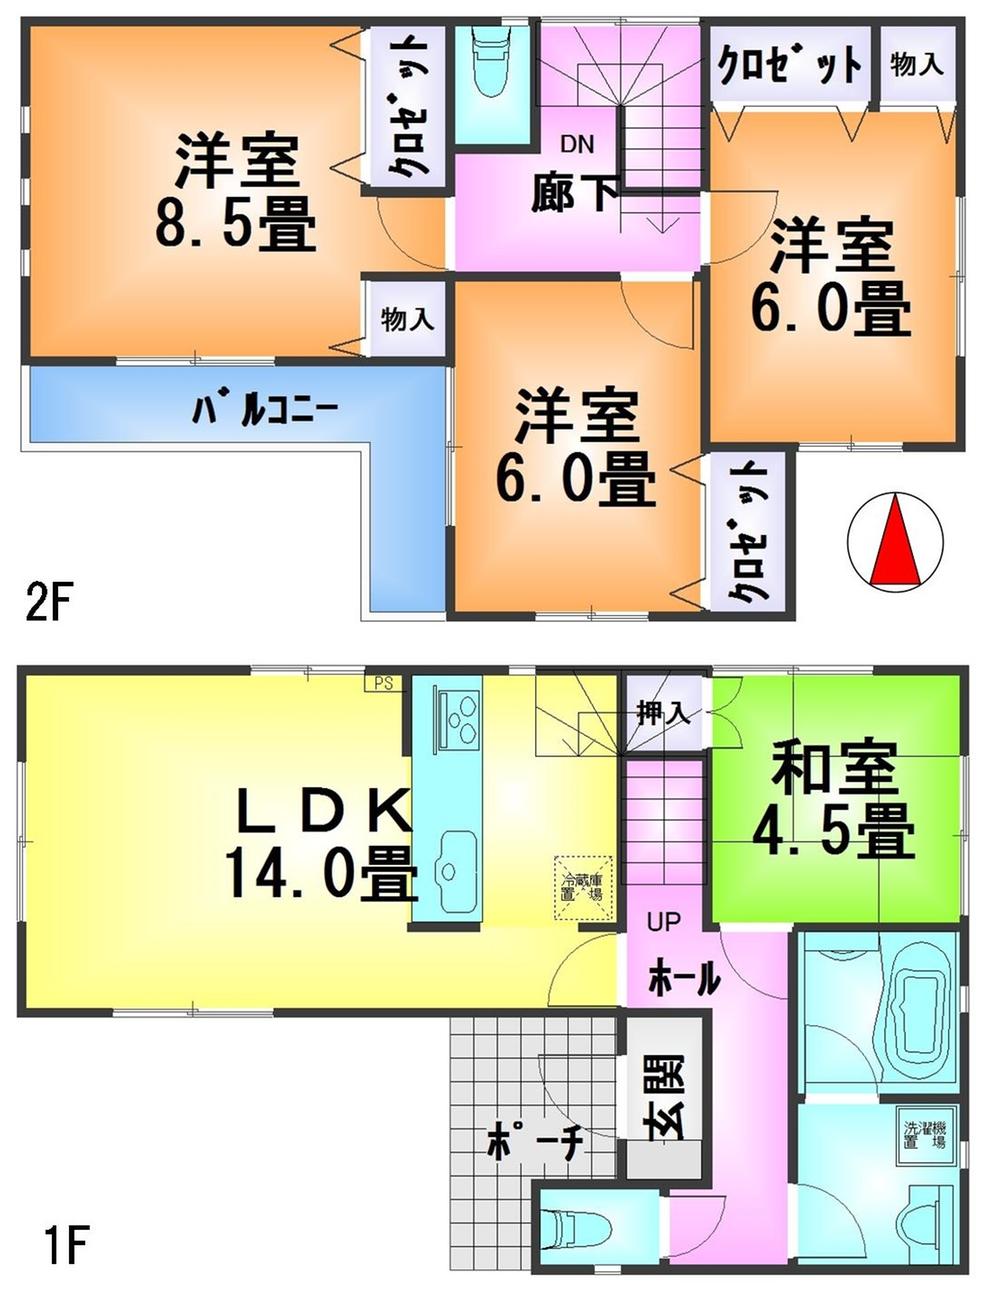 Floor plan. 19,800,000 yen, 4LDK + S (storeroom), Land area 142.83 sq m , Building area 93.15 sq m